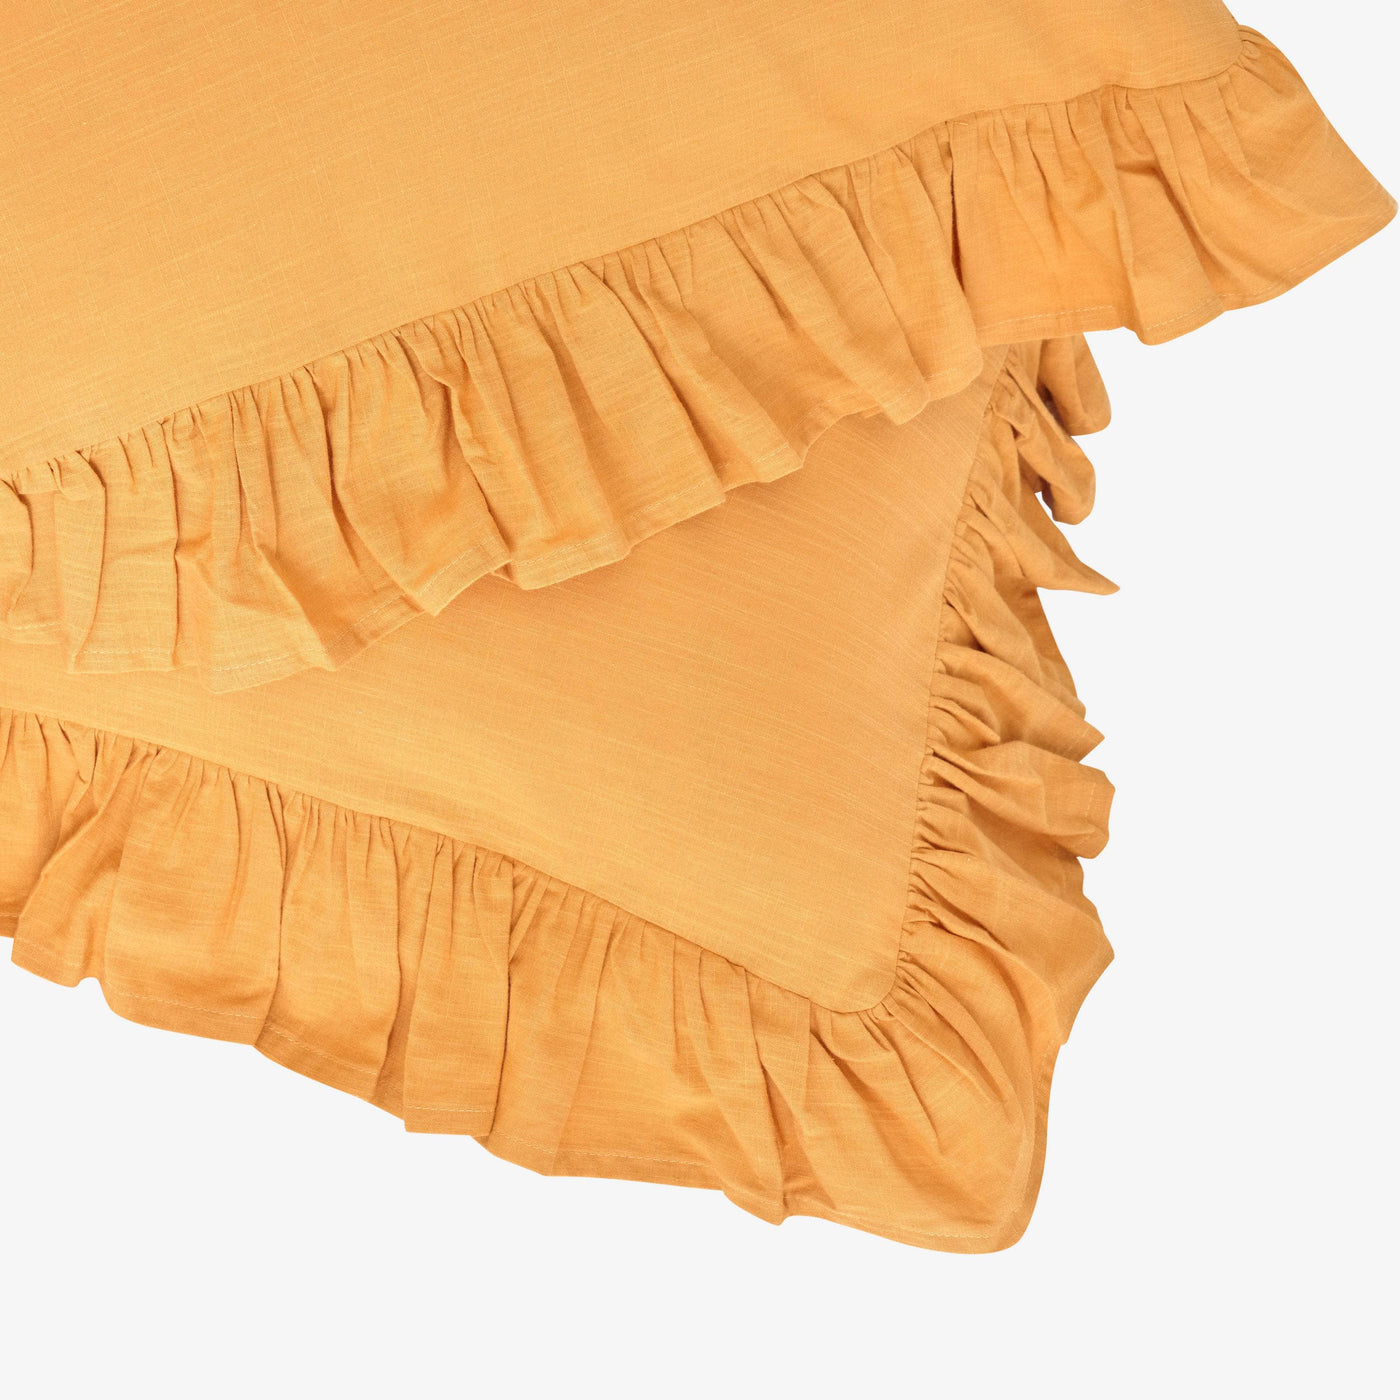 Ruby 100% Turkish Cotton Duvet Cover Set, Mustard, Super King Size Bedding Sets sazy.com